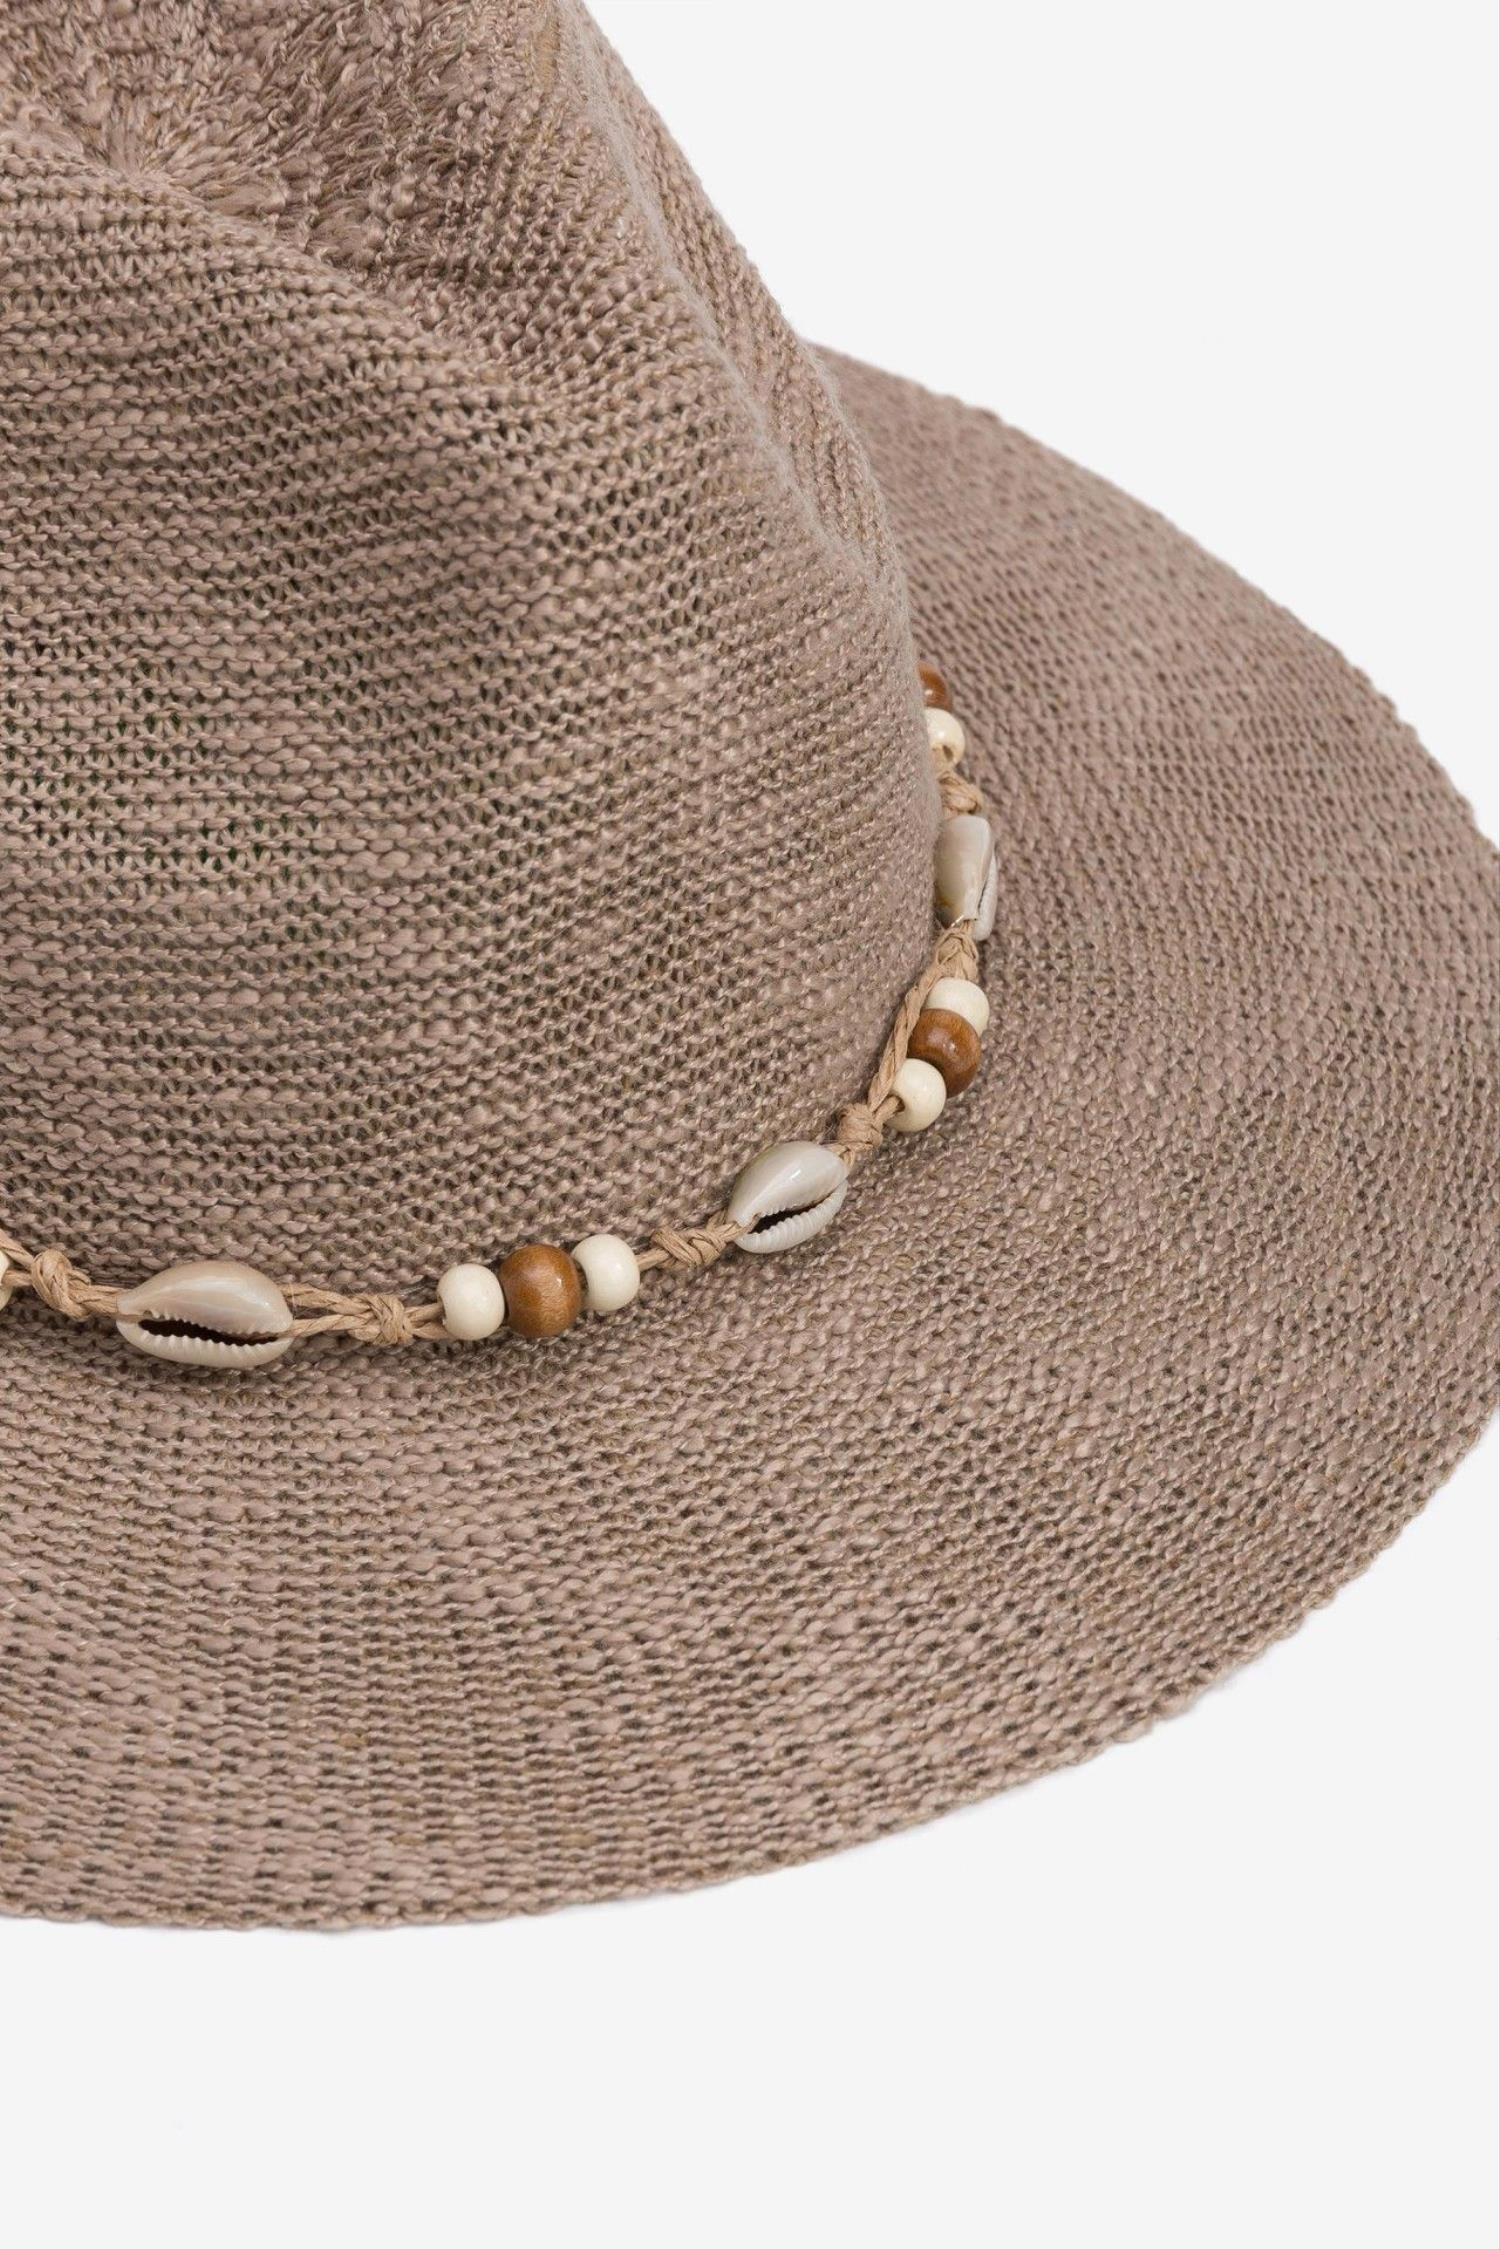 Sombrero en color marrón con detalle conchas de la marca Vilanova con referencia 71007817_150.